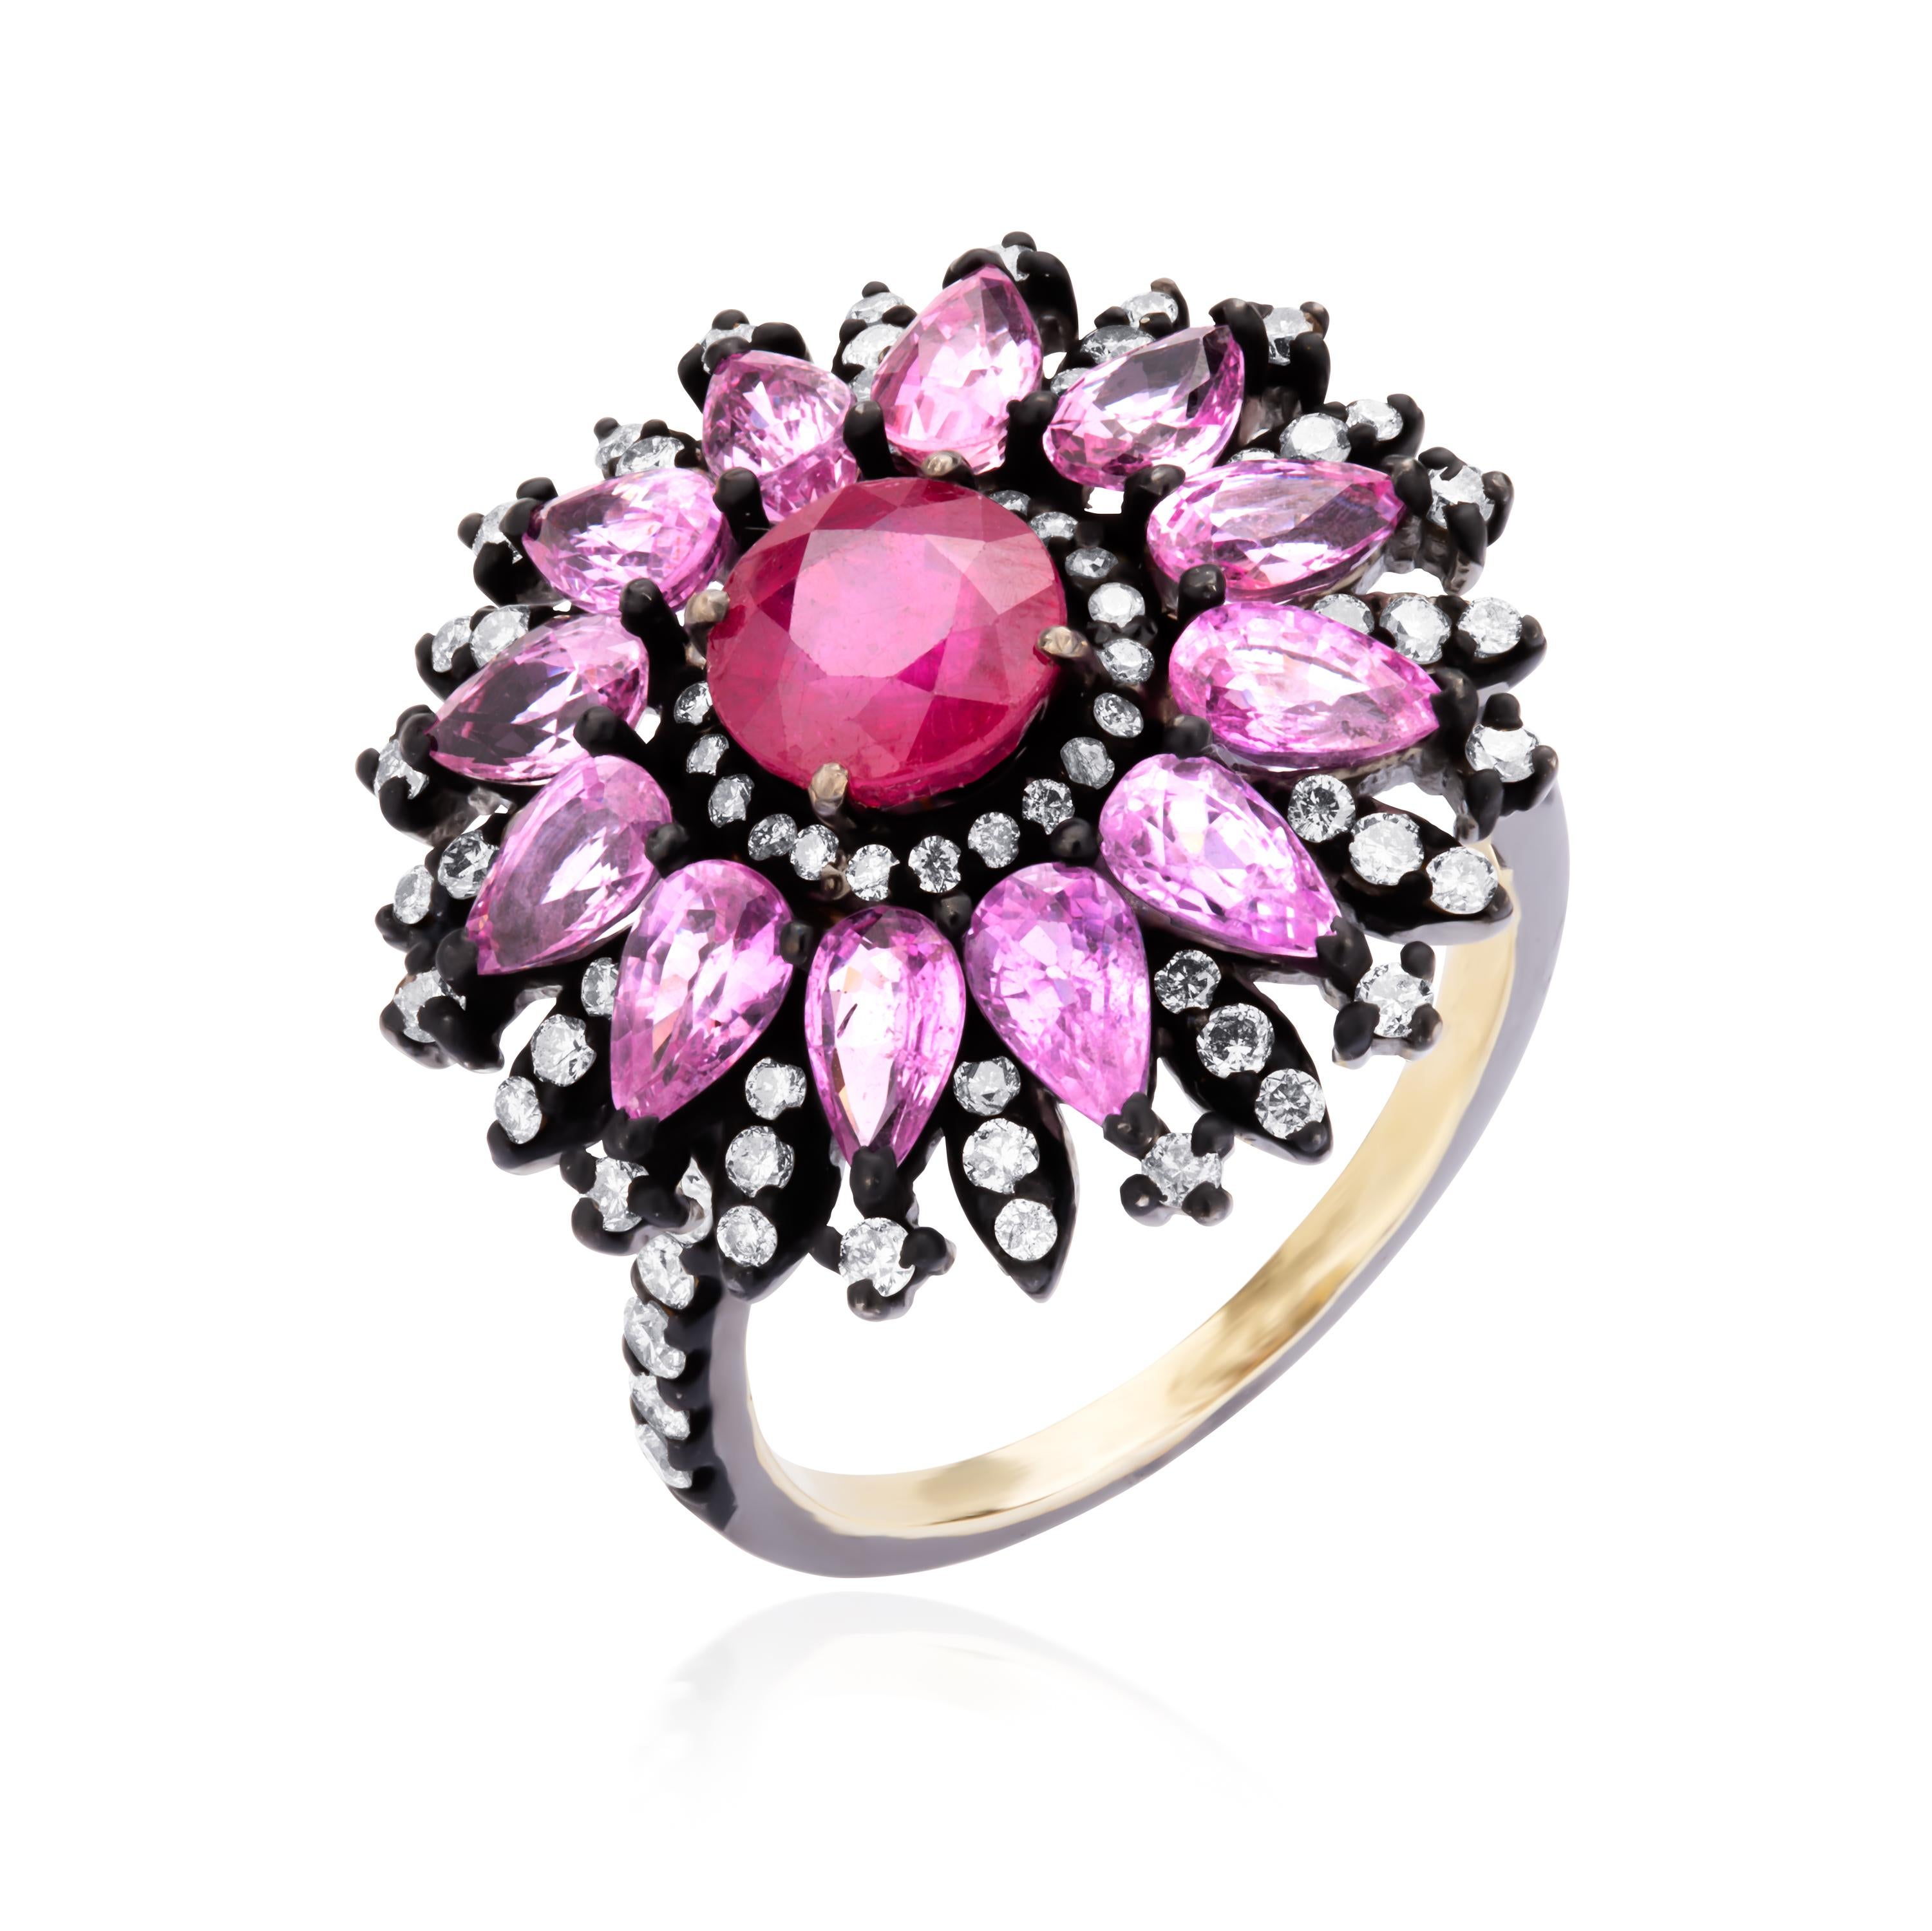 Ein wunderschöner, runder, facettierter Rubin mit einem Gewicht von 1,59 Karat ist inmitten von rosa Saphiren im Birnenschliff und Diamanten verziert, die ein florales Design in der Mitte bilden. Handgefertigt aus 18-karätigem Gold und Rhodium, wird